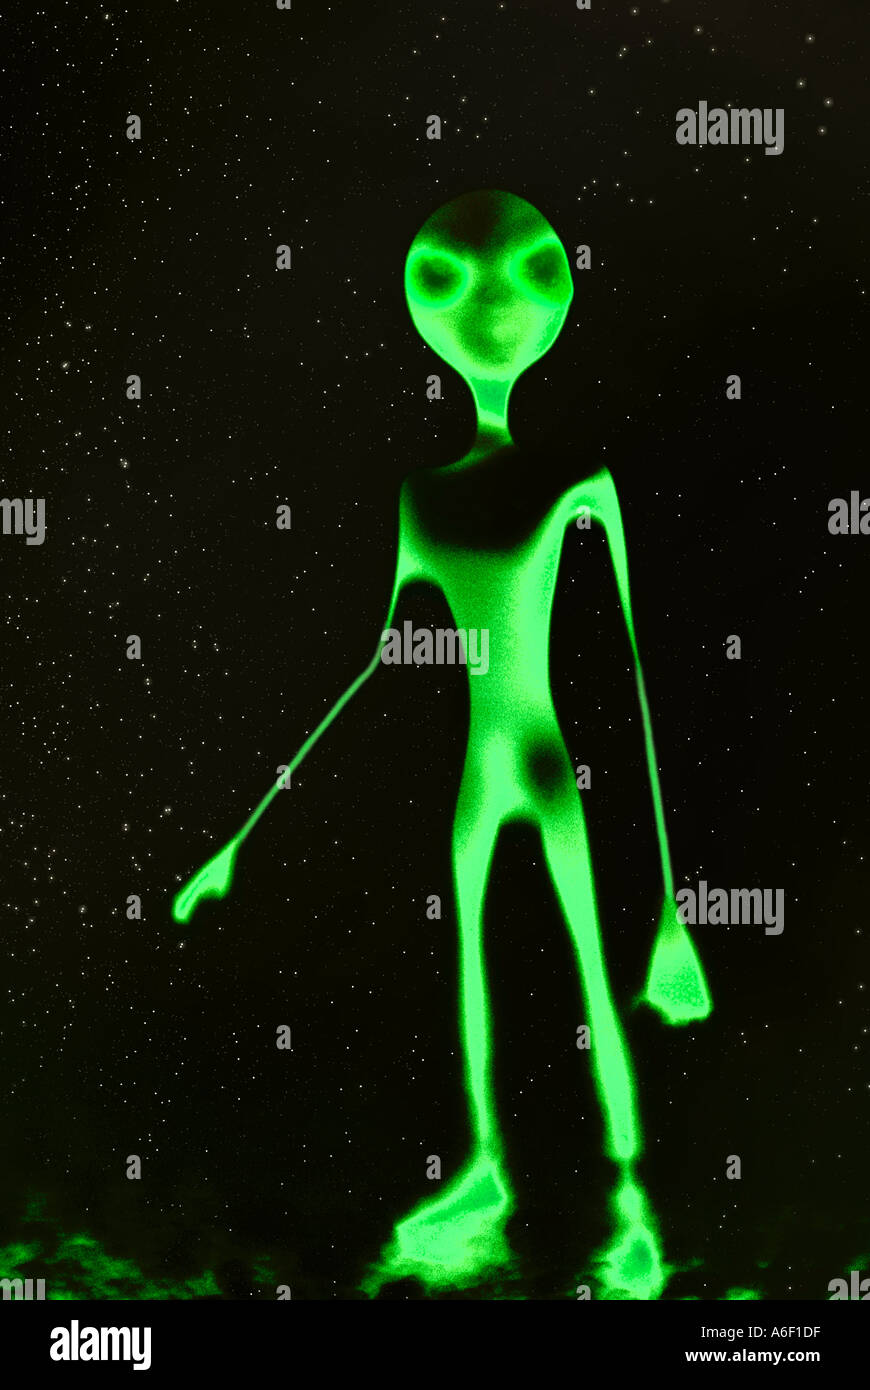 Extraterrestrial Alien. Stock Photo